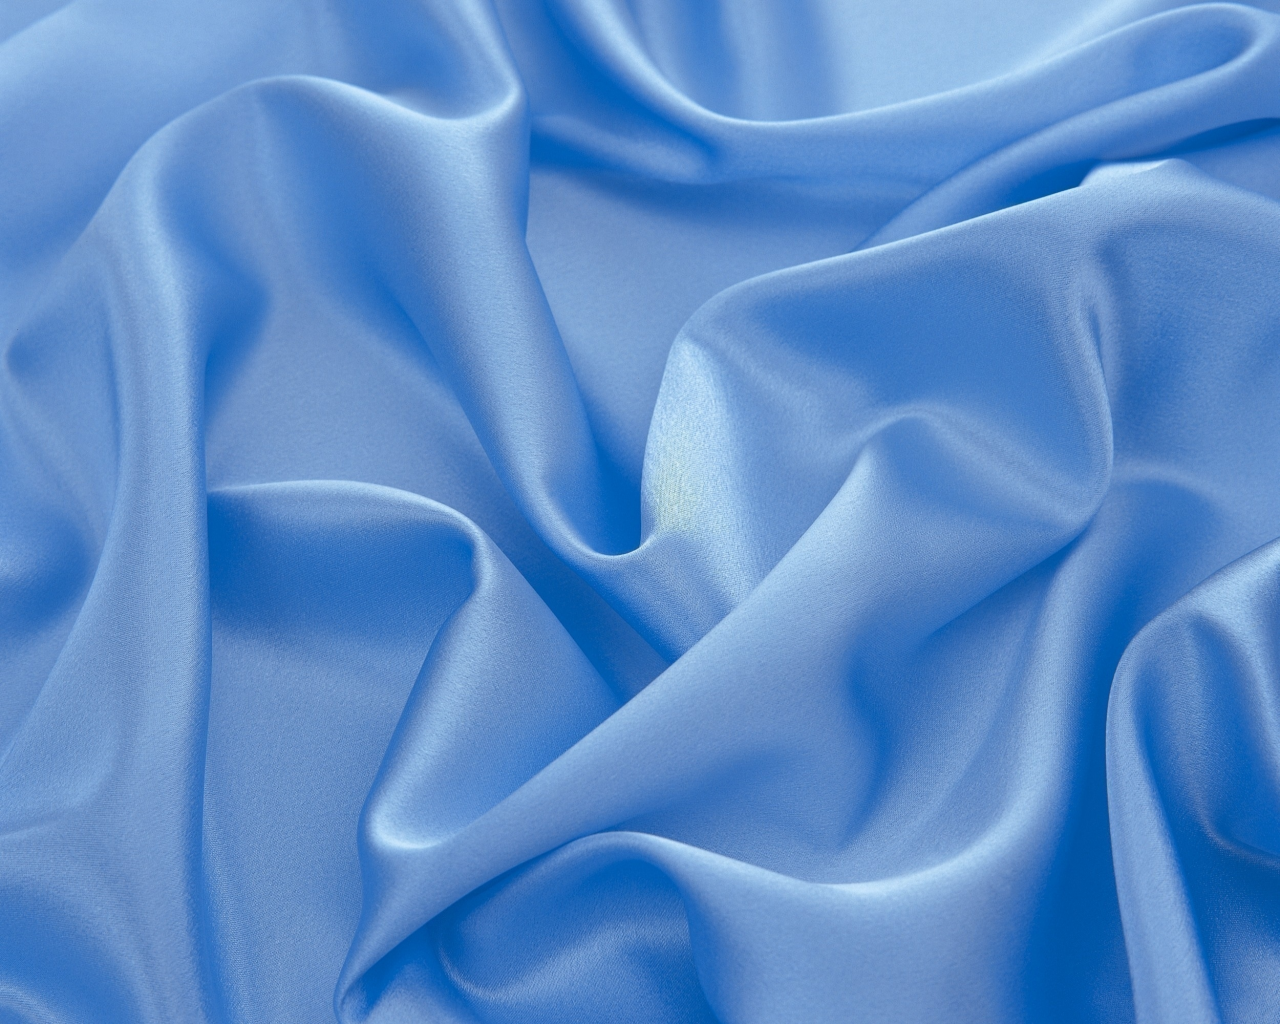 ткань, складки, текстура, светлая, голубая